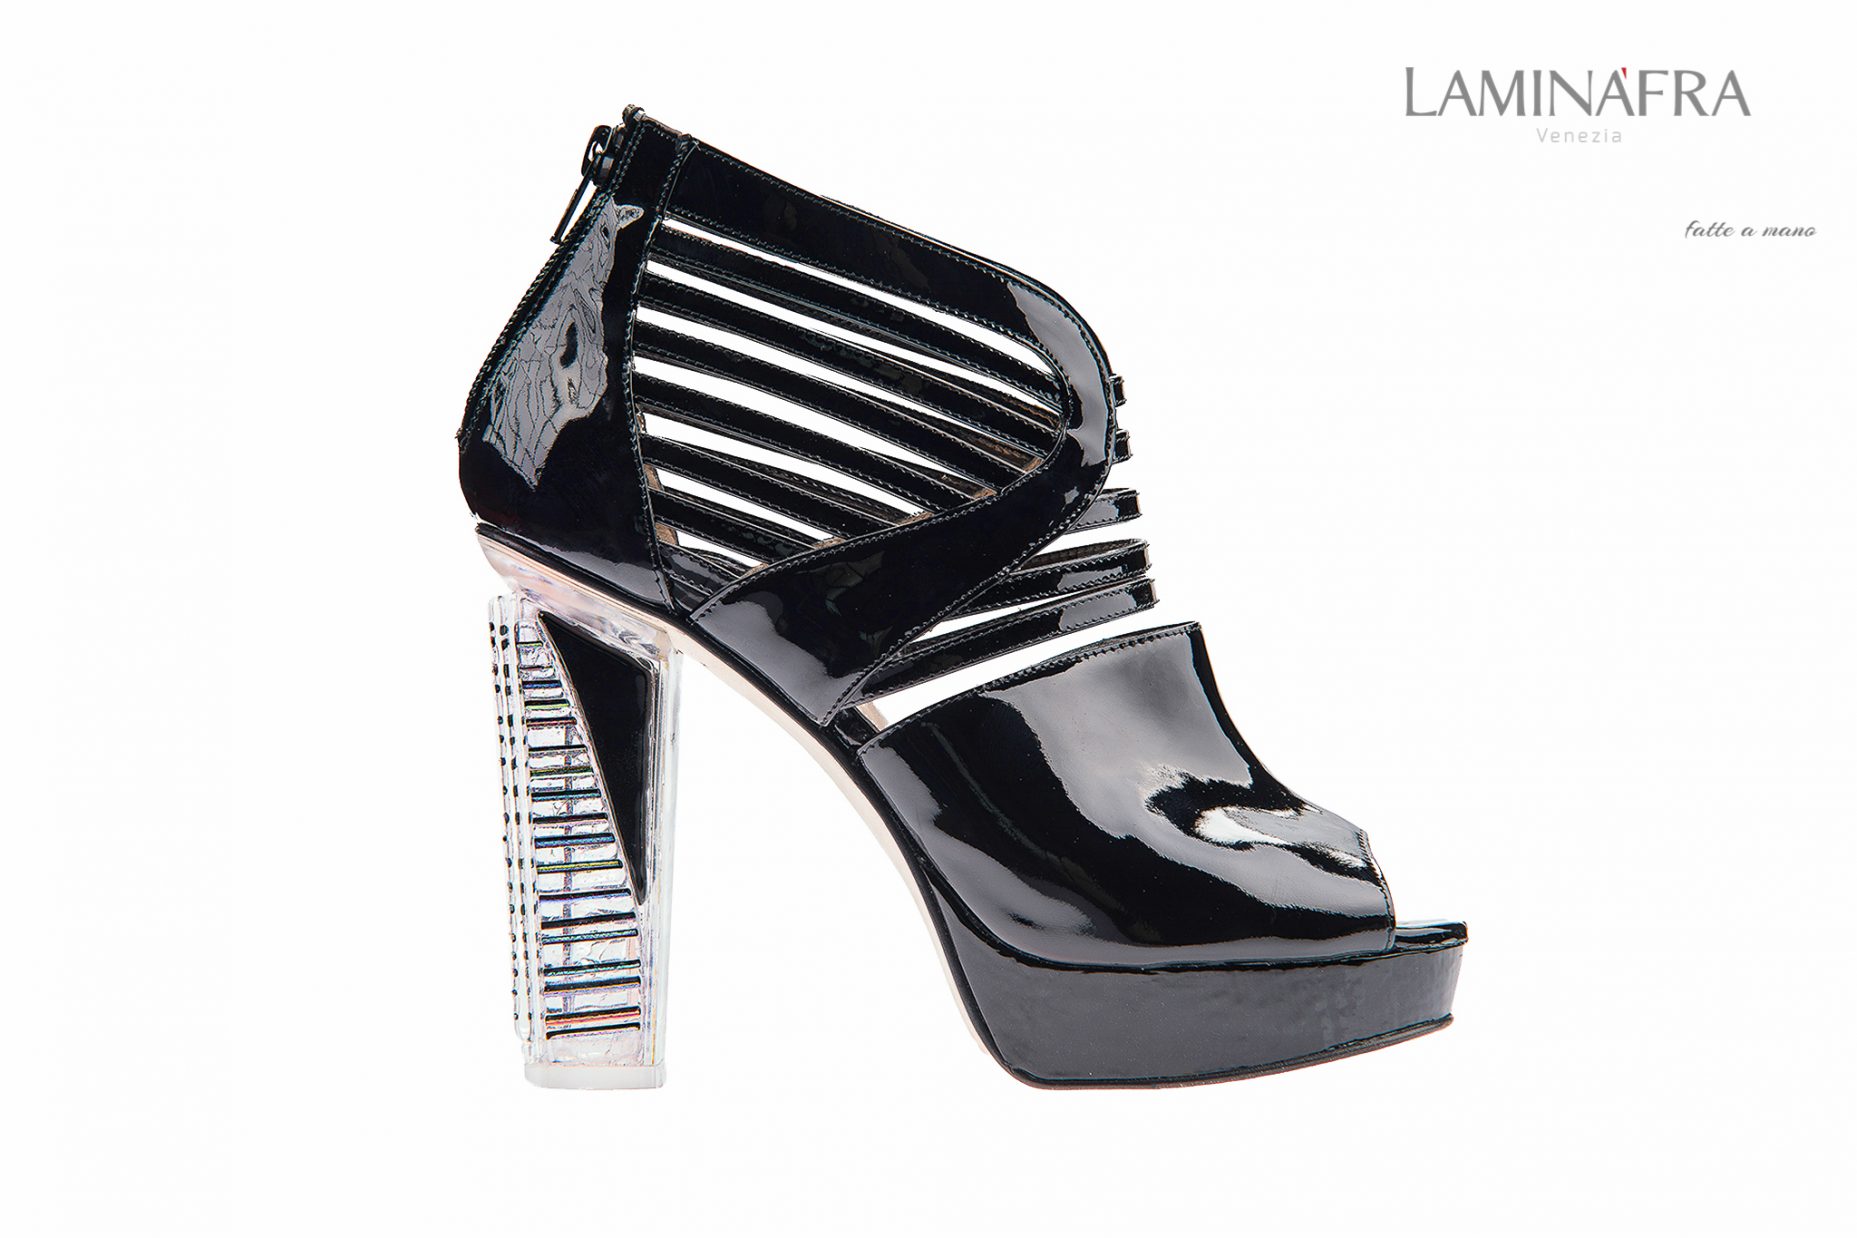 Laminafra Luxury Shoes – Still life e fashion catalogue for www.laminafra.it